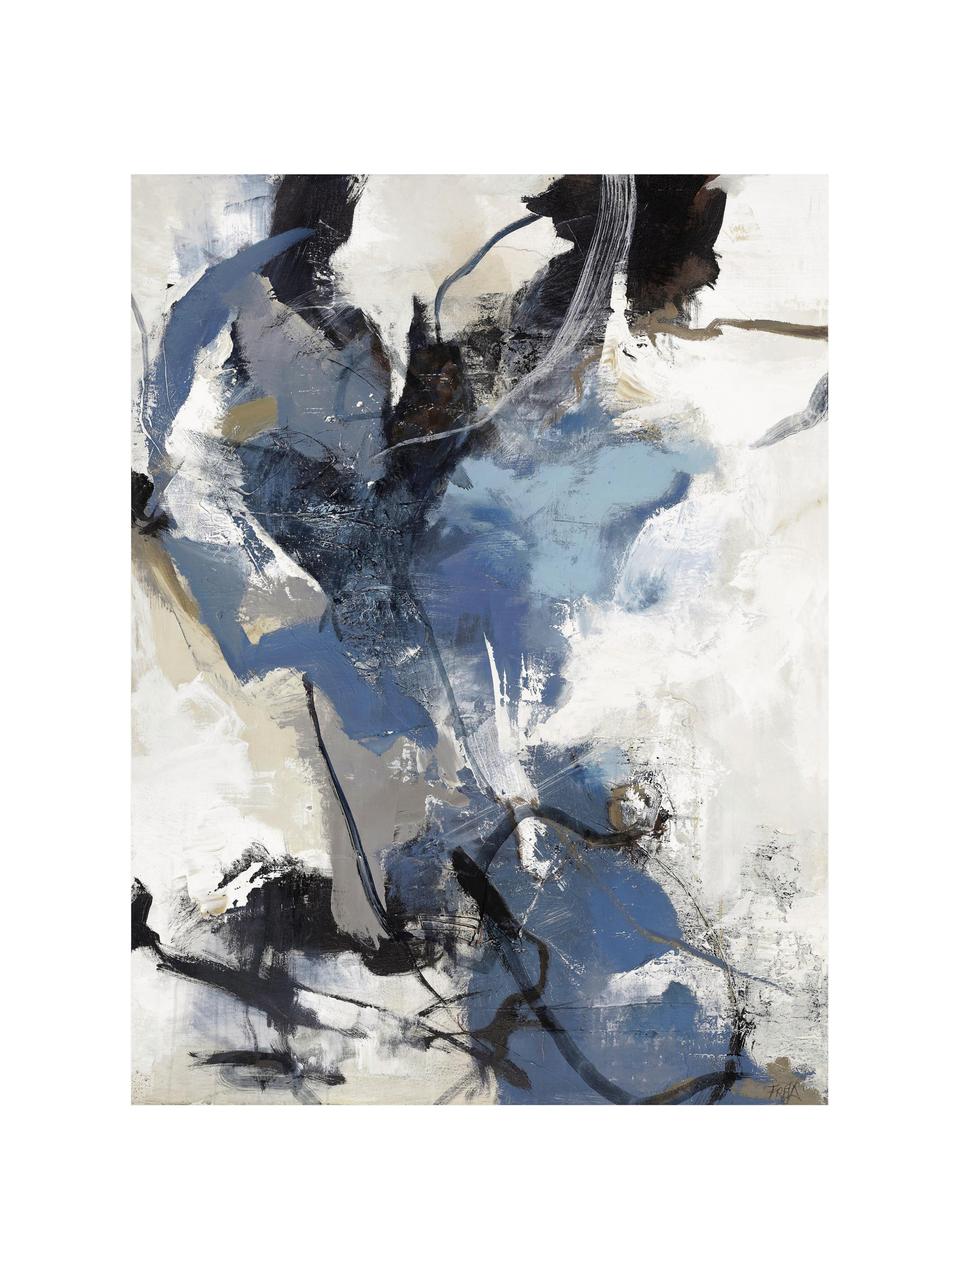 Handbemalter Leinwanddruck Blue vibes, Bild: Ölfarben auf Leinwand, Blau, Schwarz, Weisstöne, Grau, Braun, B 90 x H 118 cm